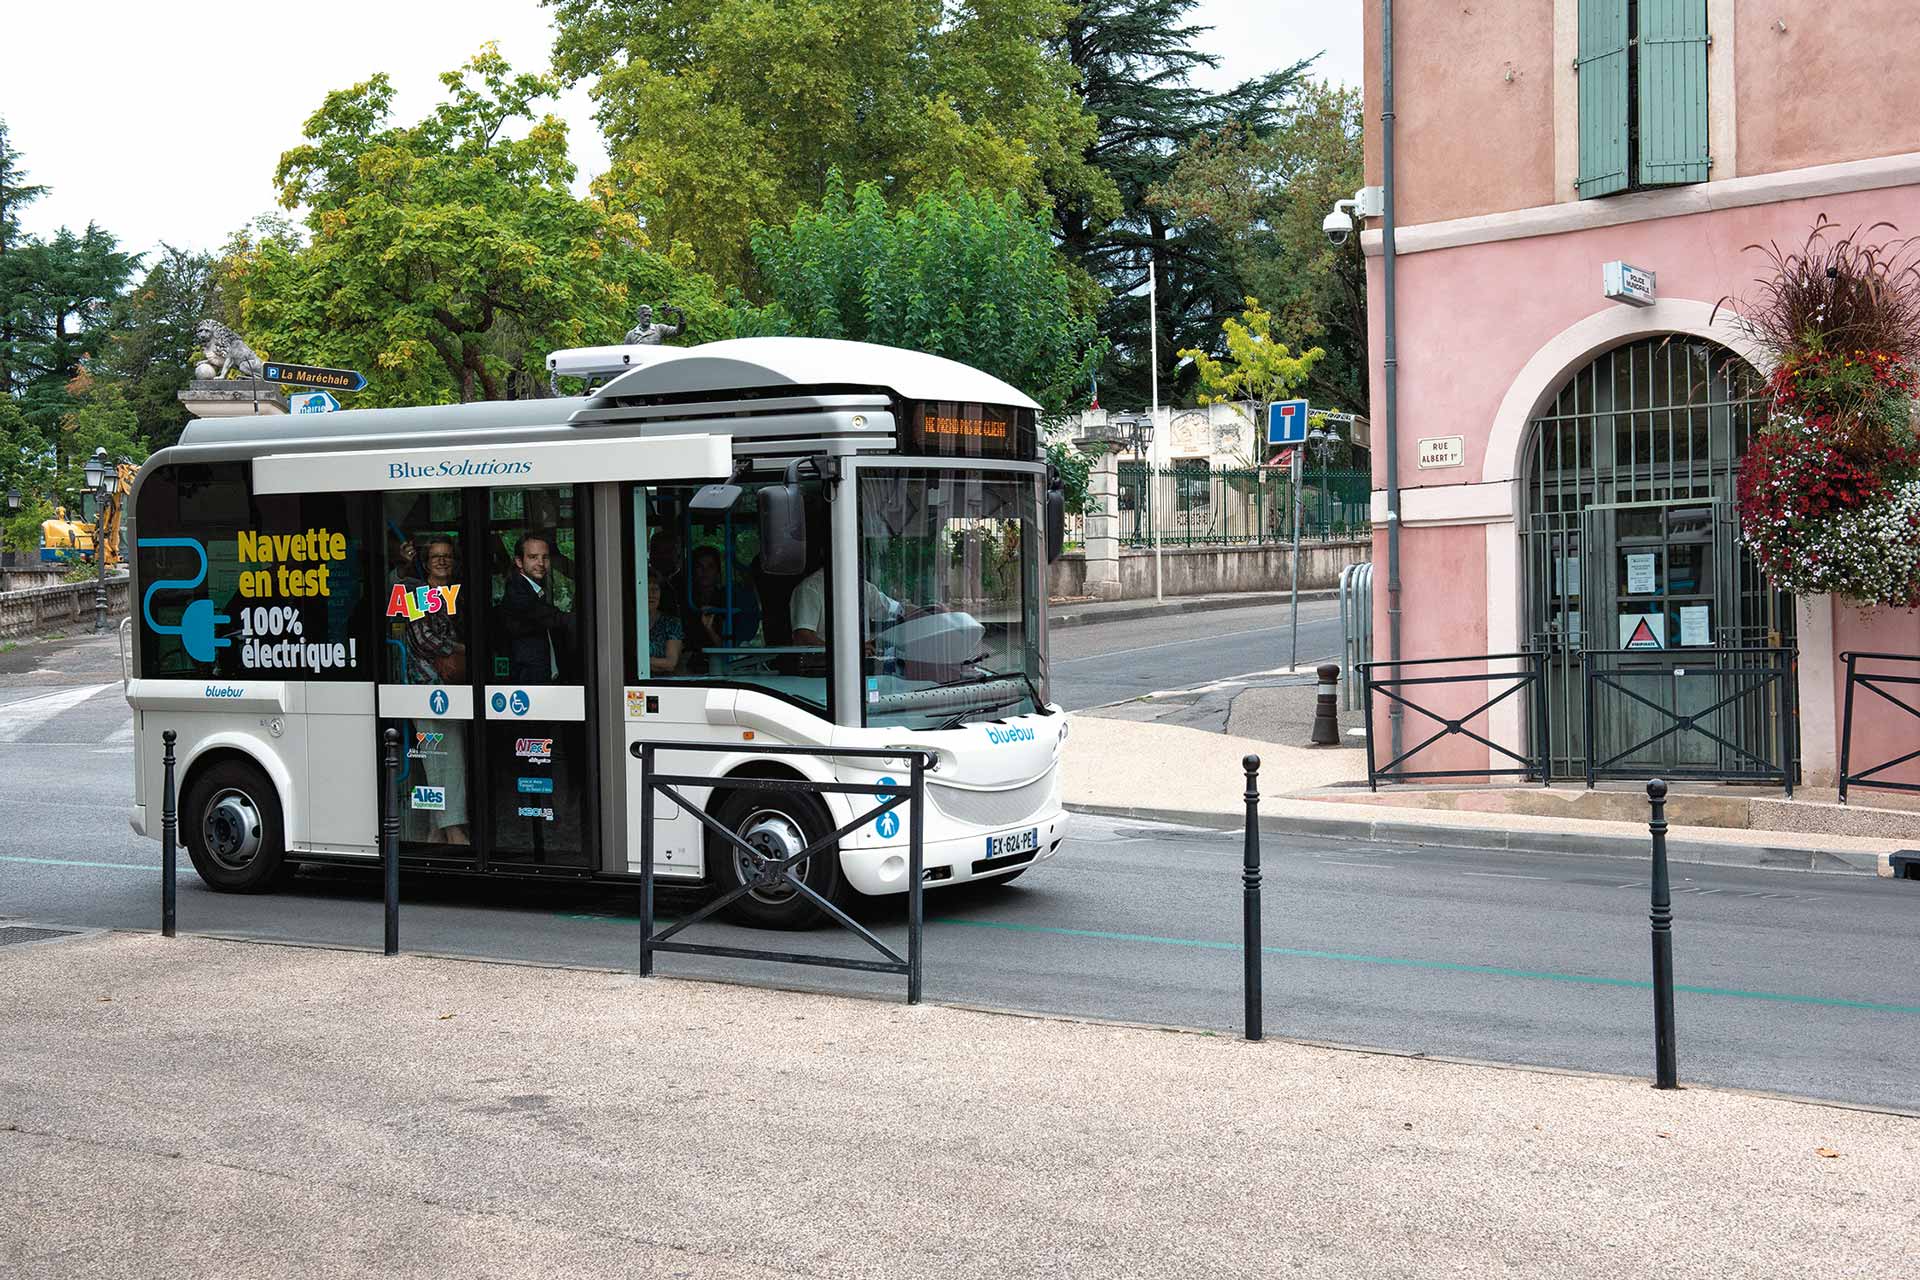 Testé fin septembre, le minibus électrique sera mis en circulation en février 2020 sur deux lignes Ales’Y du centre-ville d’Alès.